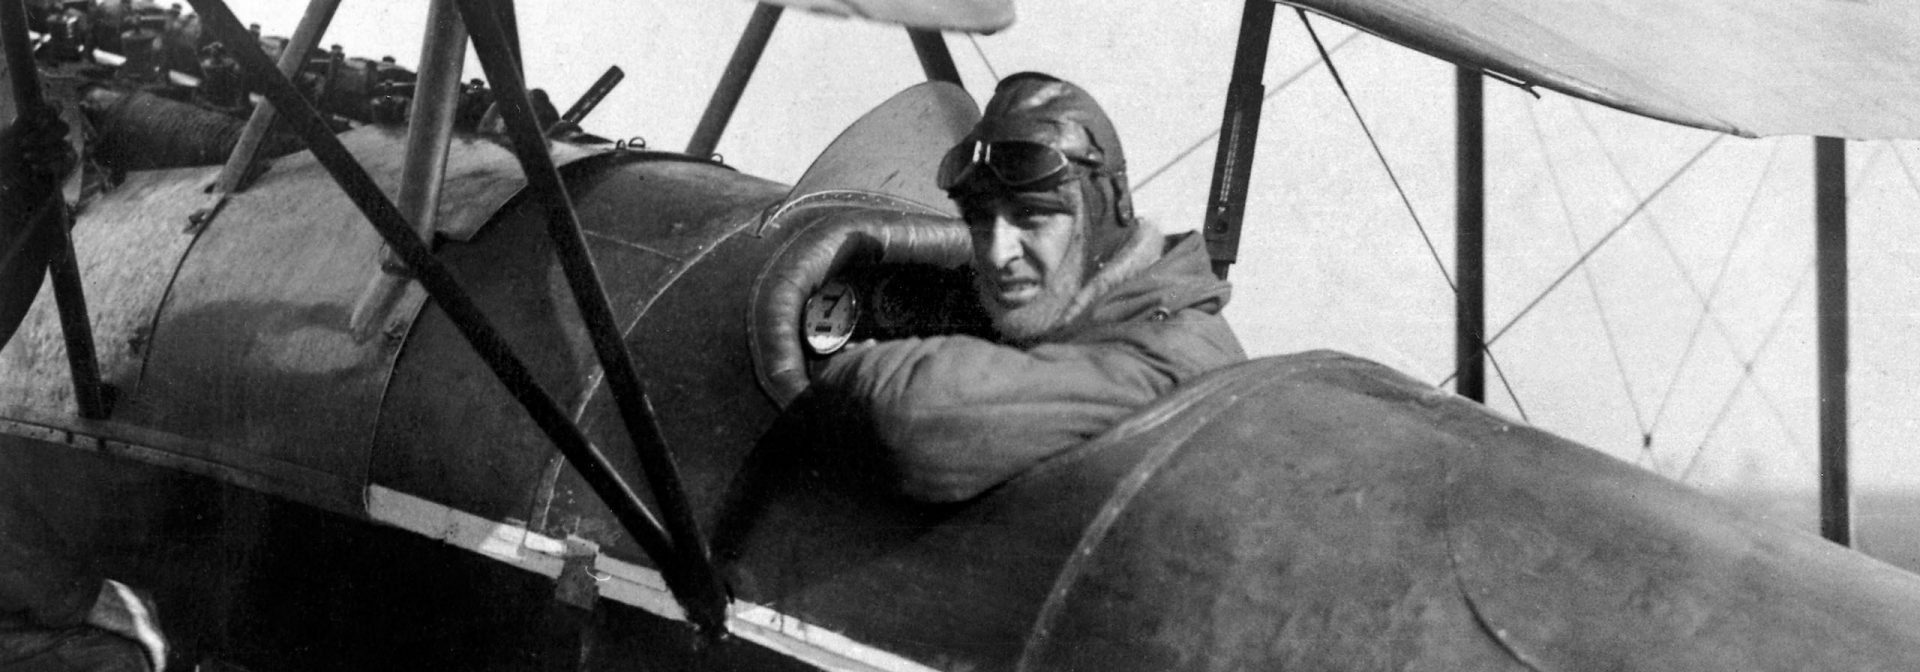 Franz Zeno Diemer fliegt 1919 einen neuen Höhenweltrekord.